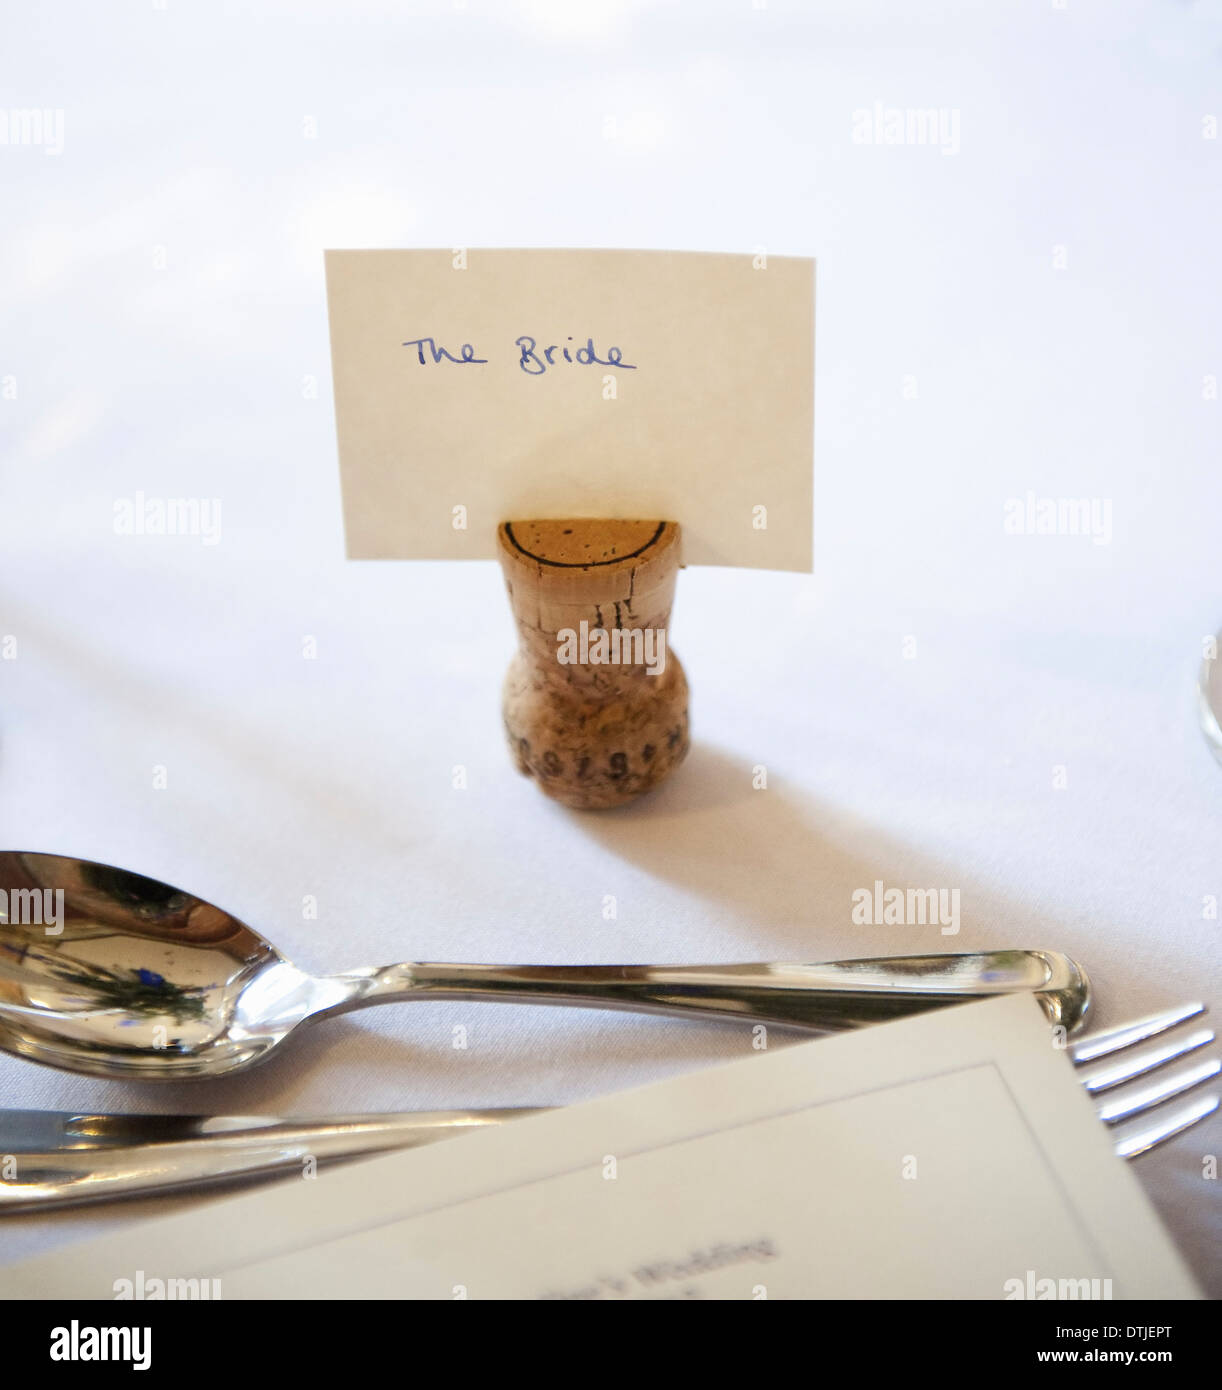 Tisch bei einem Hochzeitsbankett eine Upside-down Kork mit einem Namensschild für die Braut Silber Gabel und Löffel, England Stockfoto